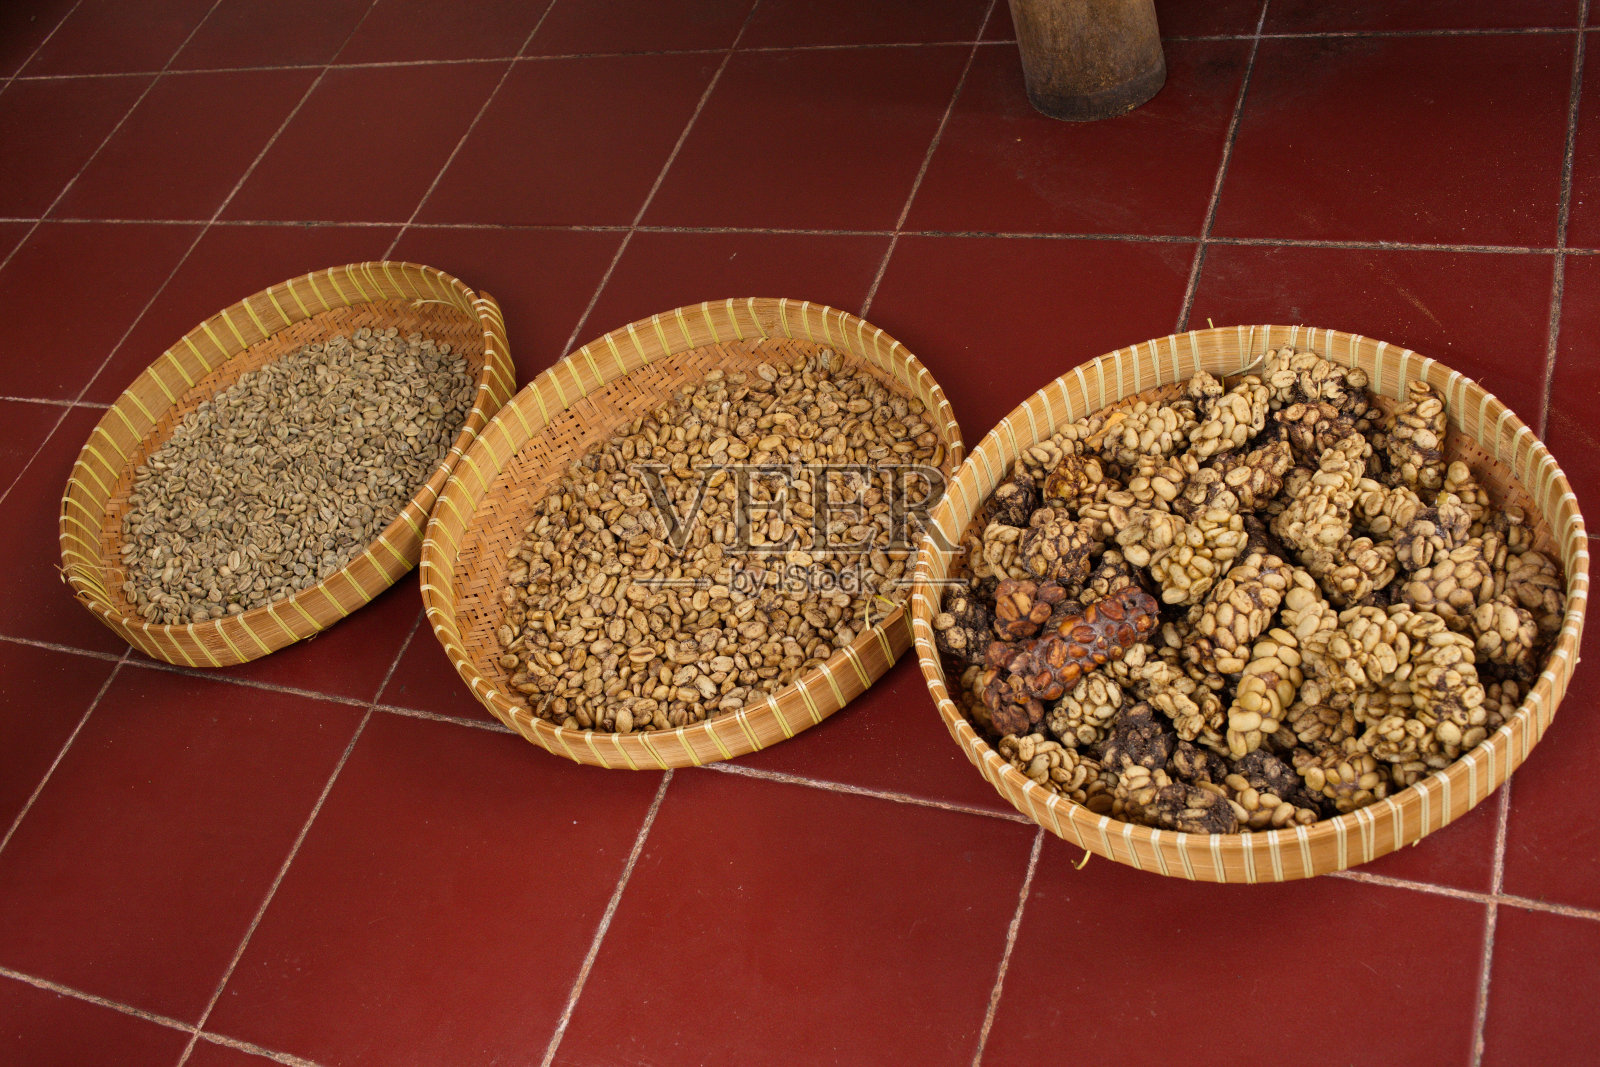 麝香猫咖啡生产过程中干燥咖啡颗粒的过程照片摄影图片